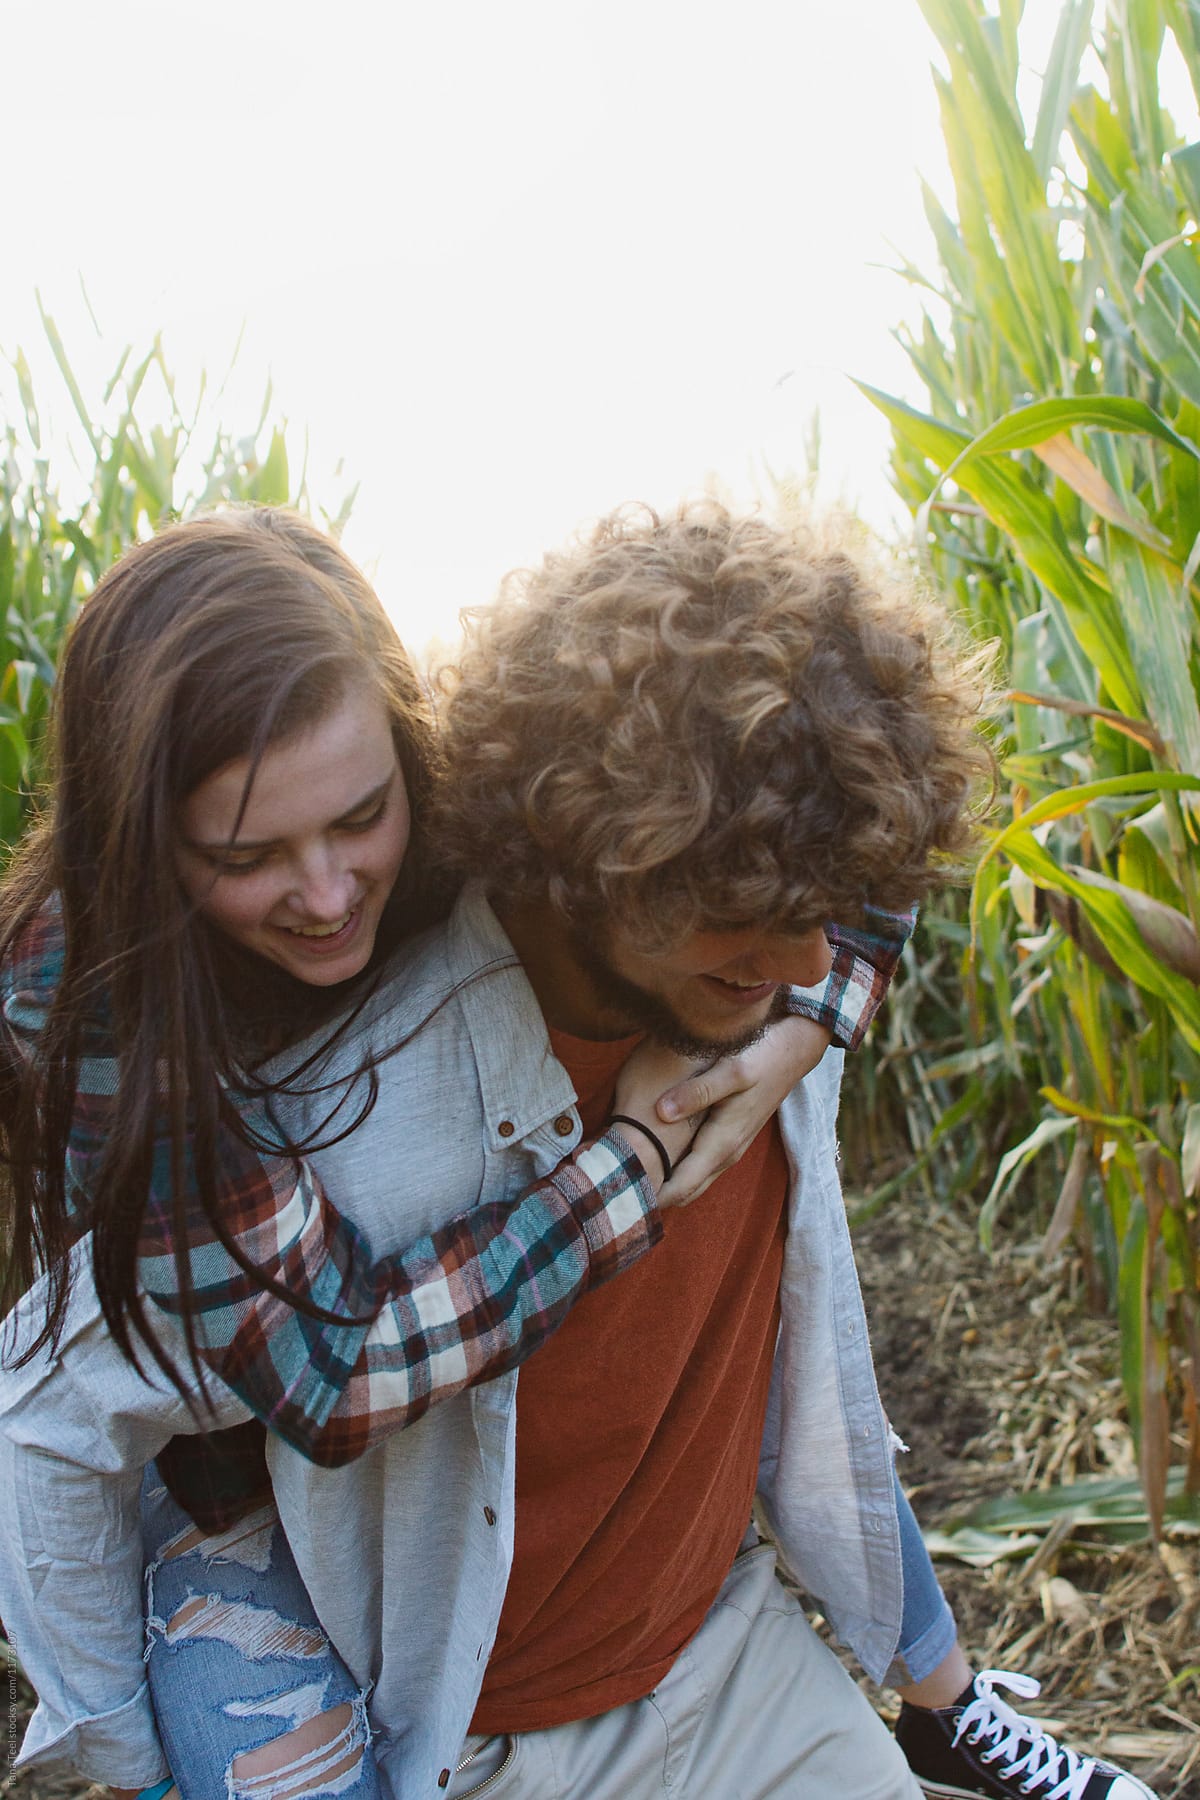 boy gives girl piggy back ride through corn maze